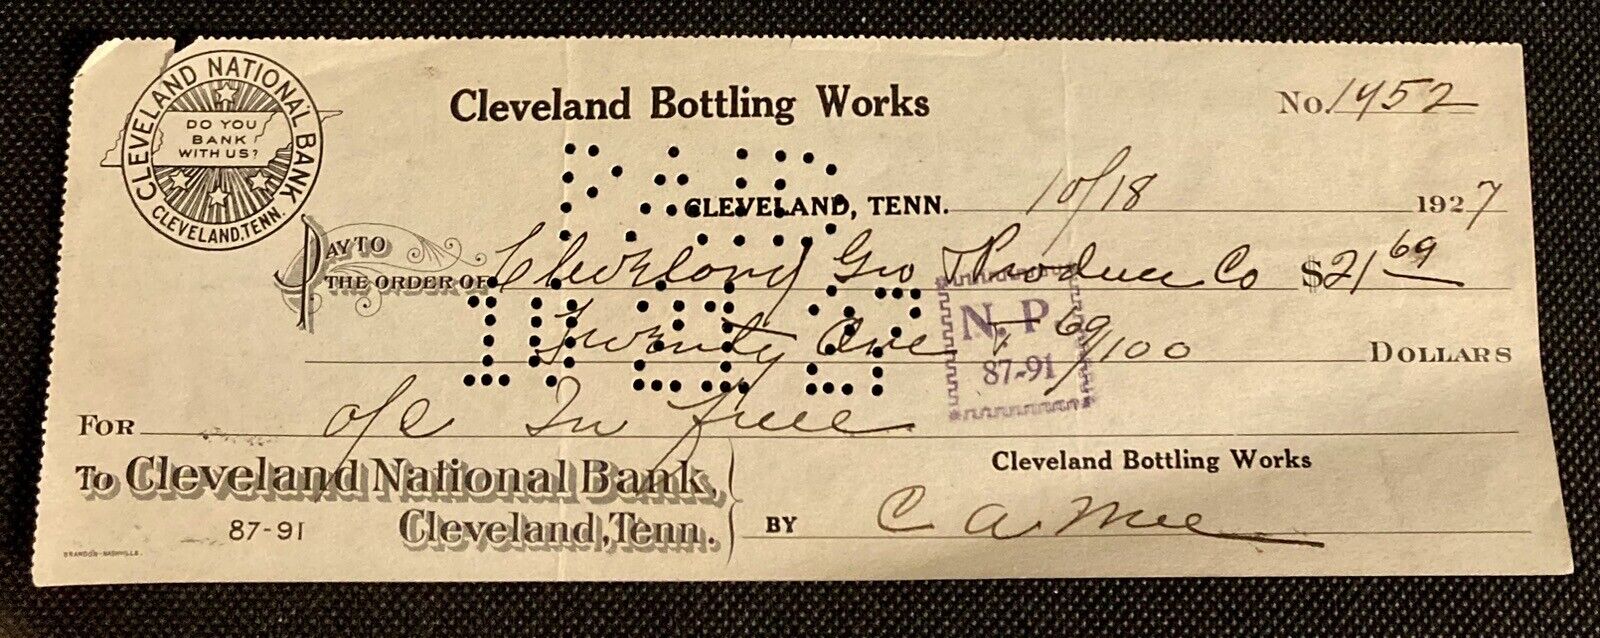 Cleveland Bottling Works - Coca Cola 1927 Check Cleveland, TN